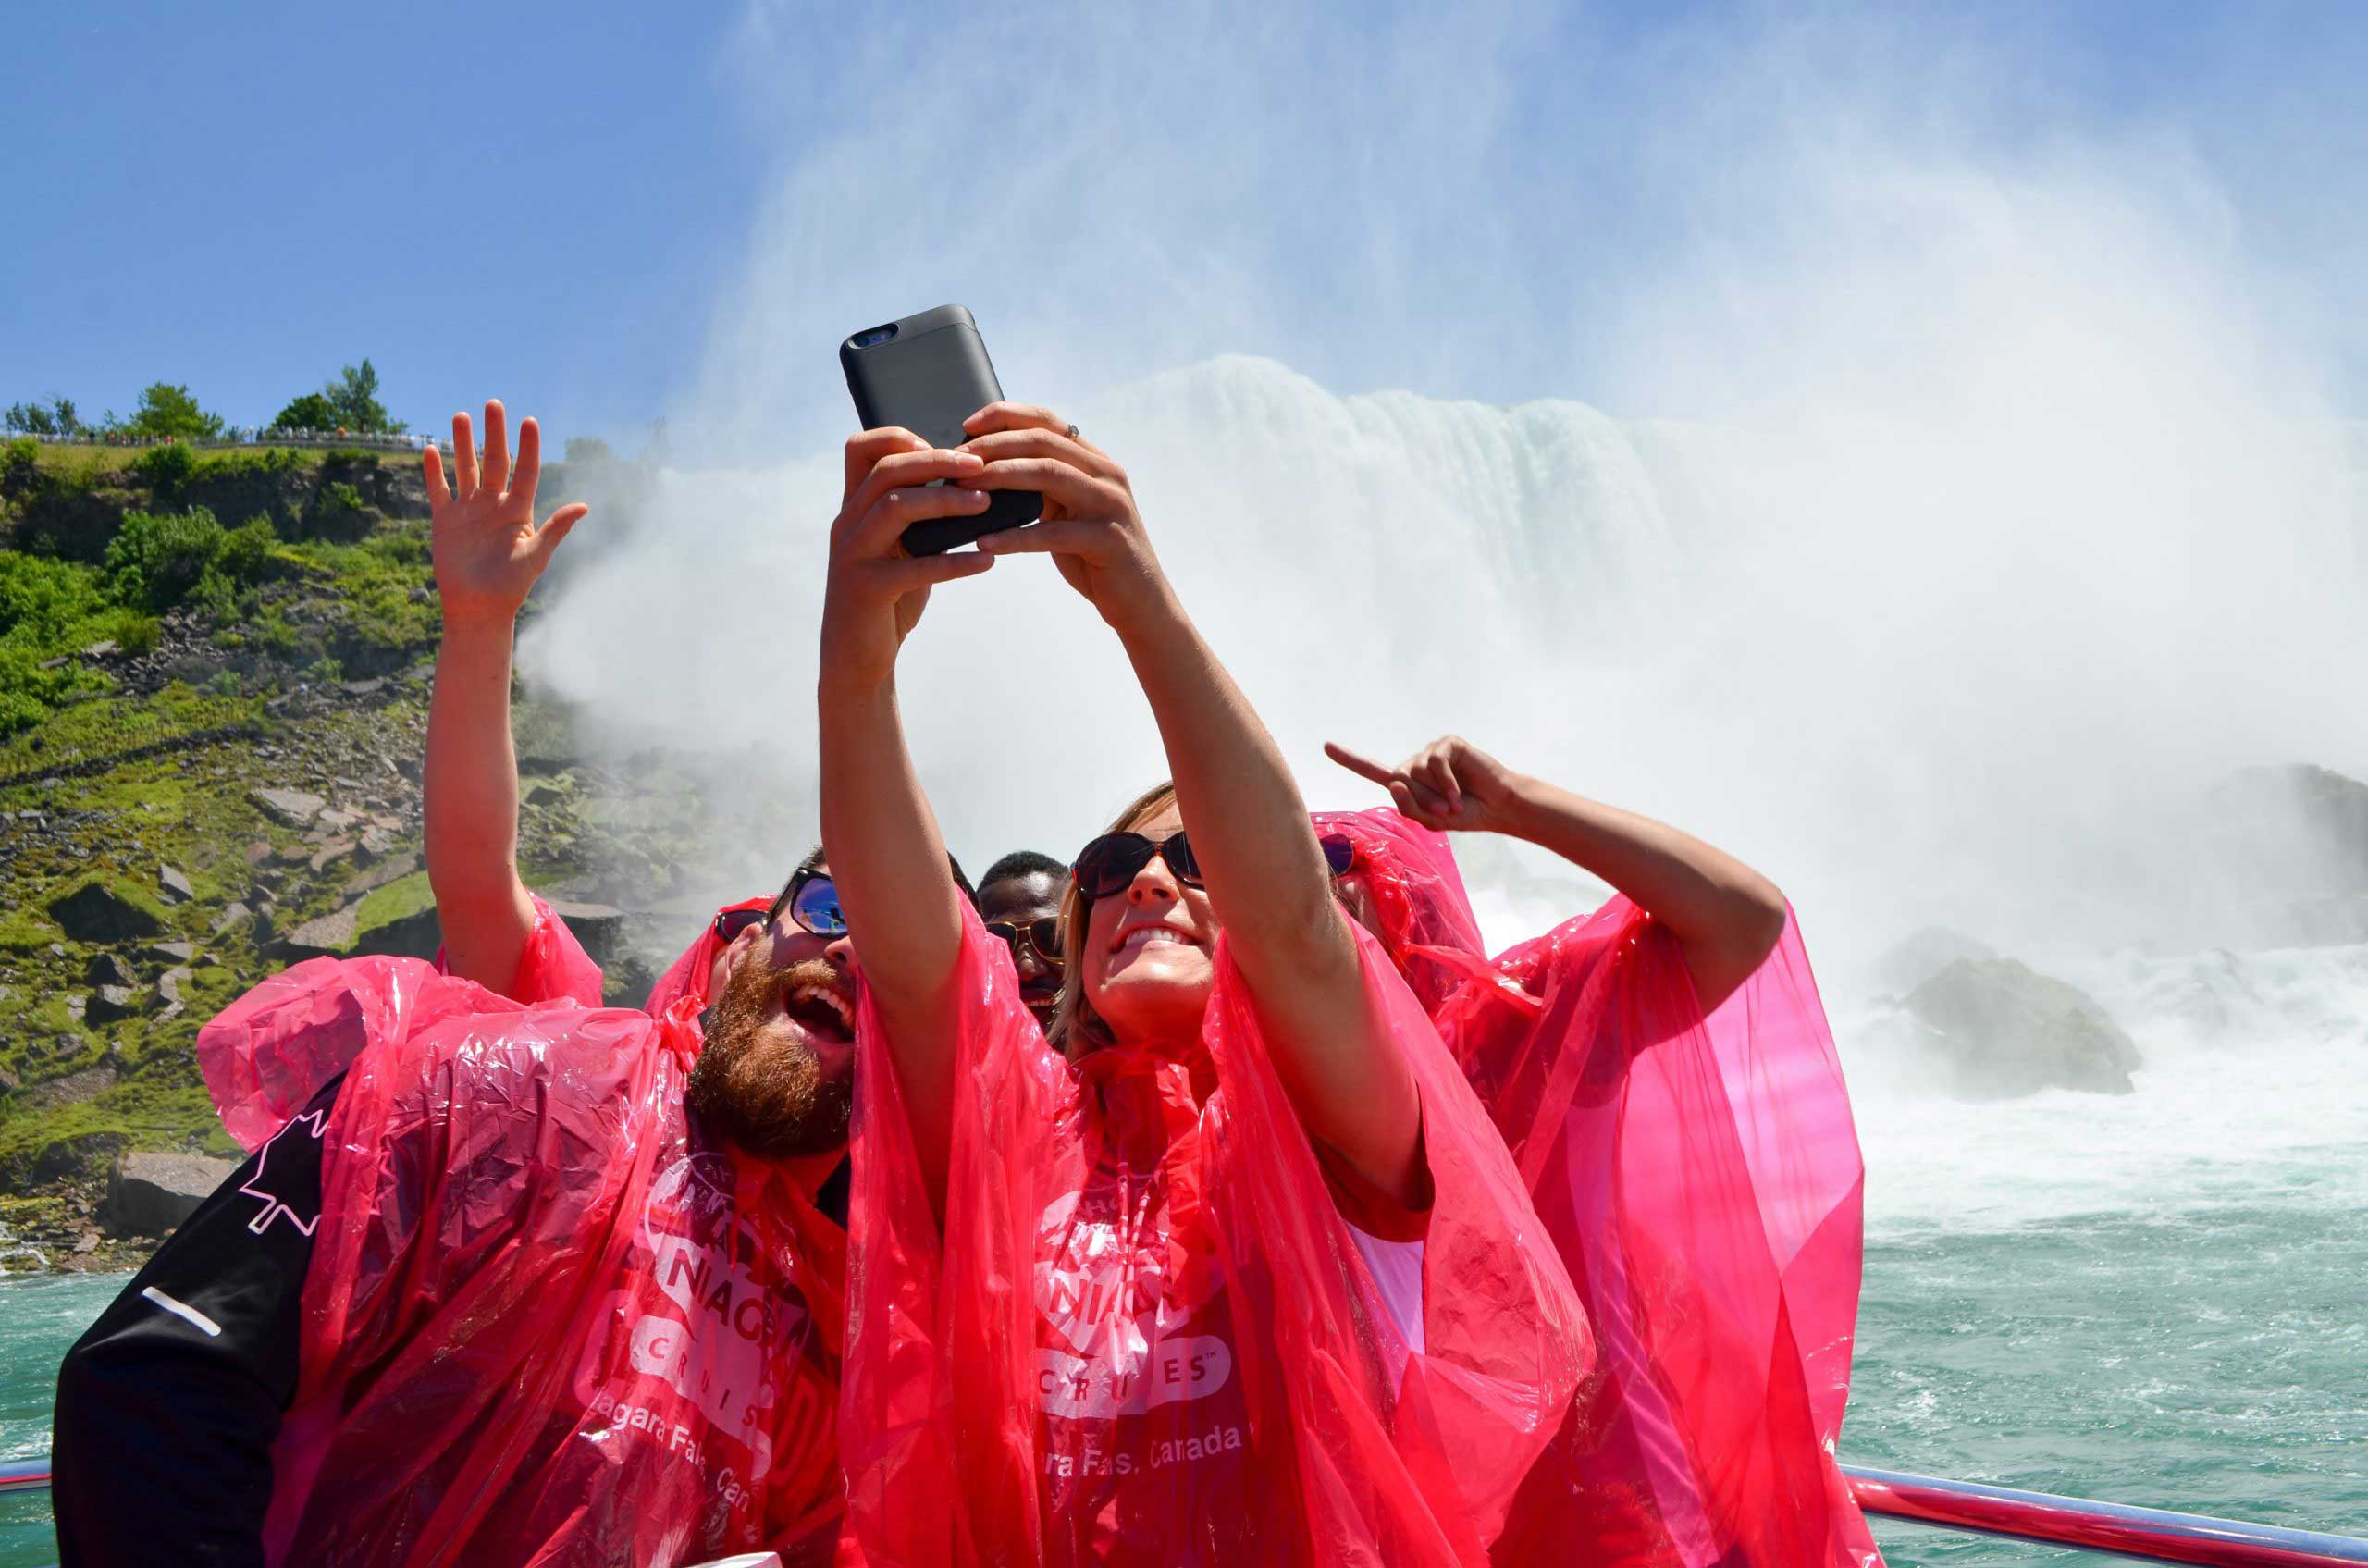 Niagara falls selfie Image